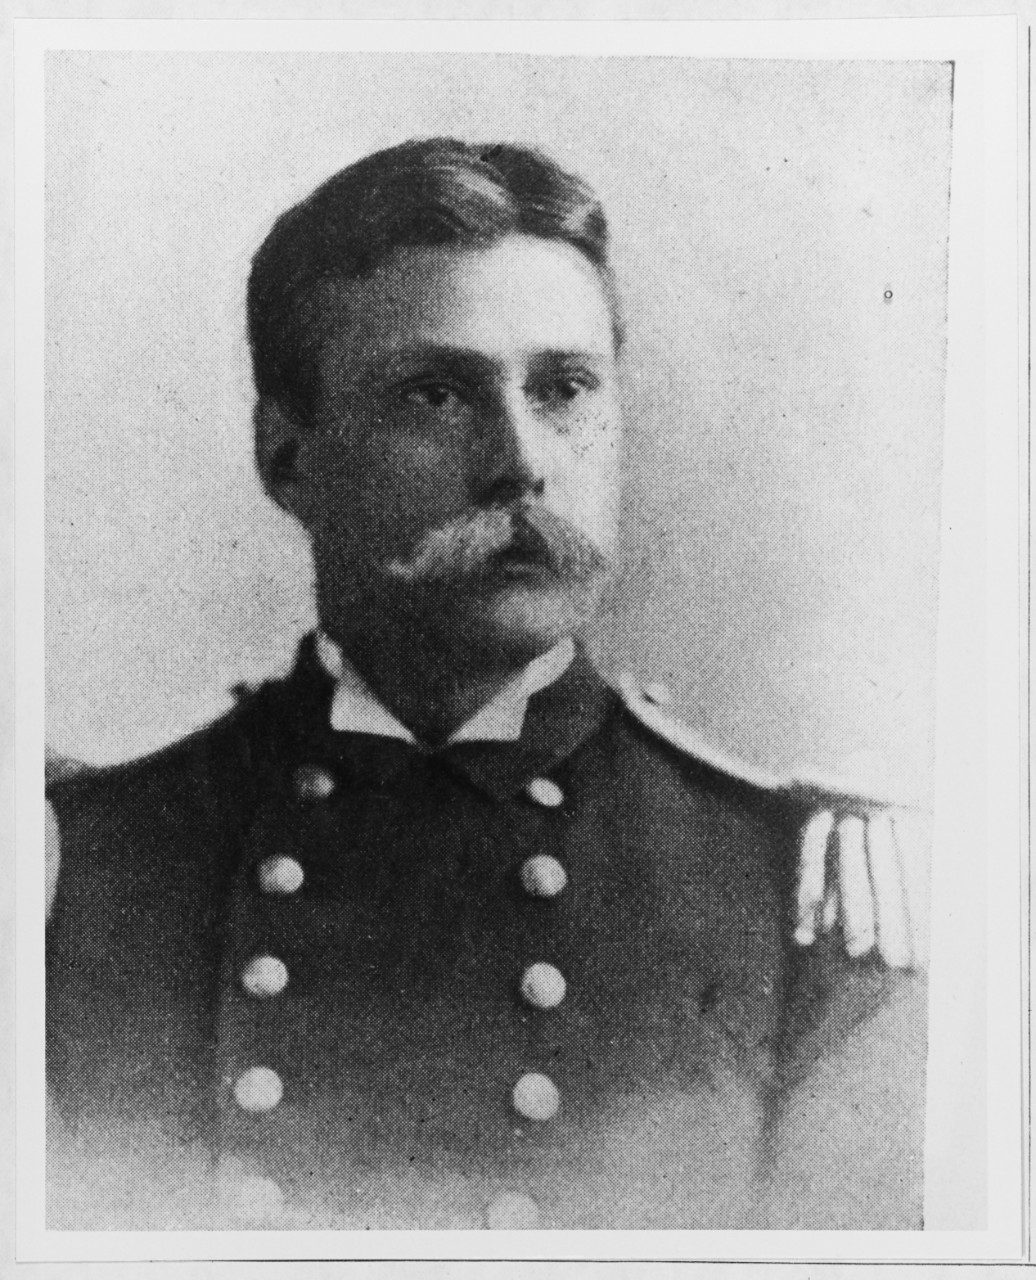 Captain John W. Collins